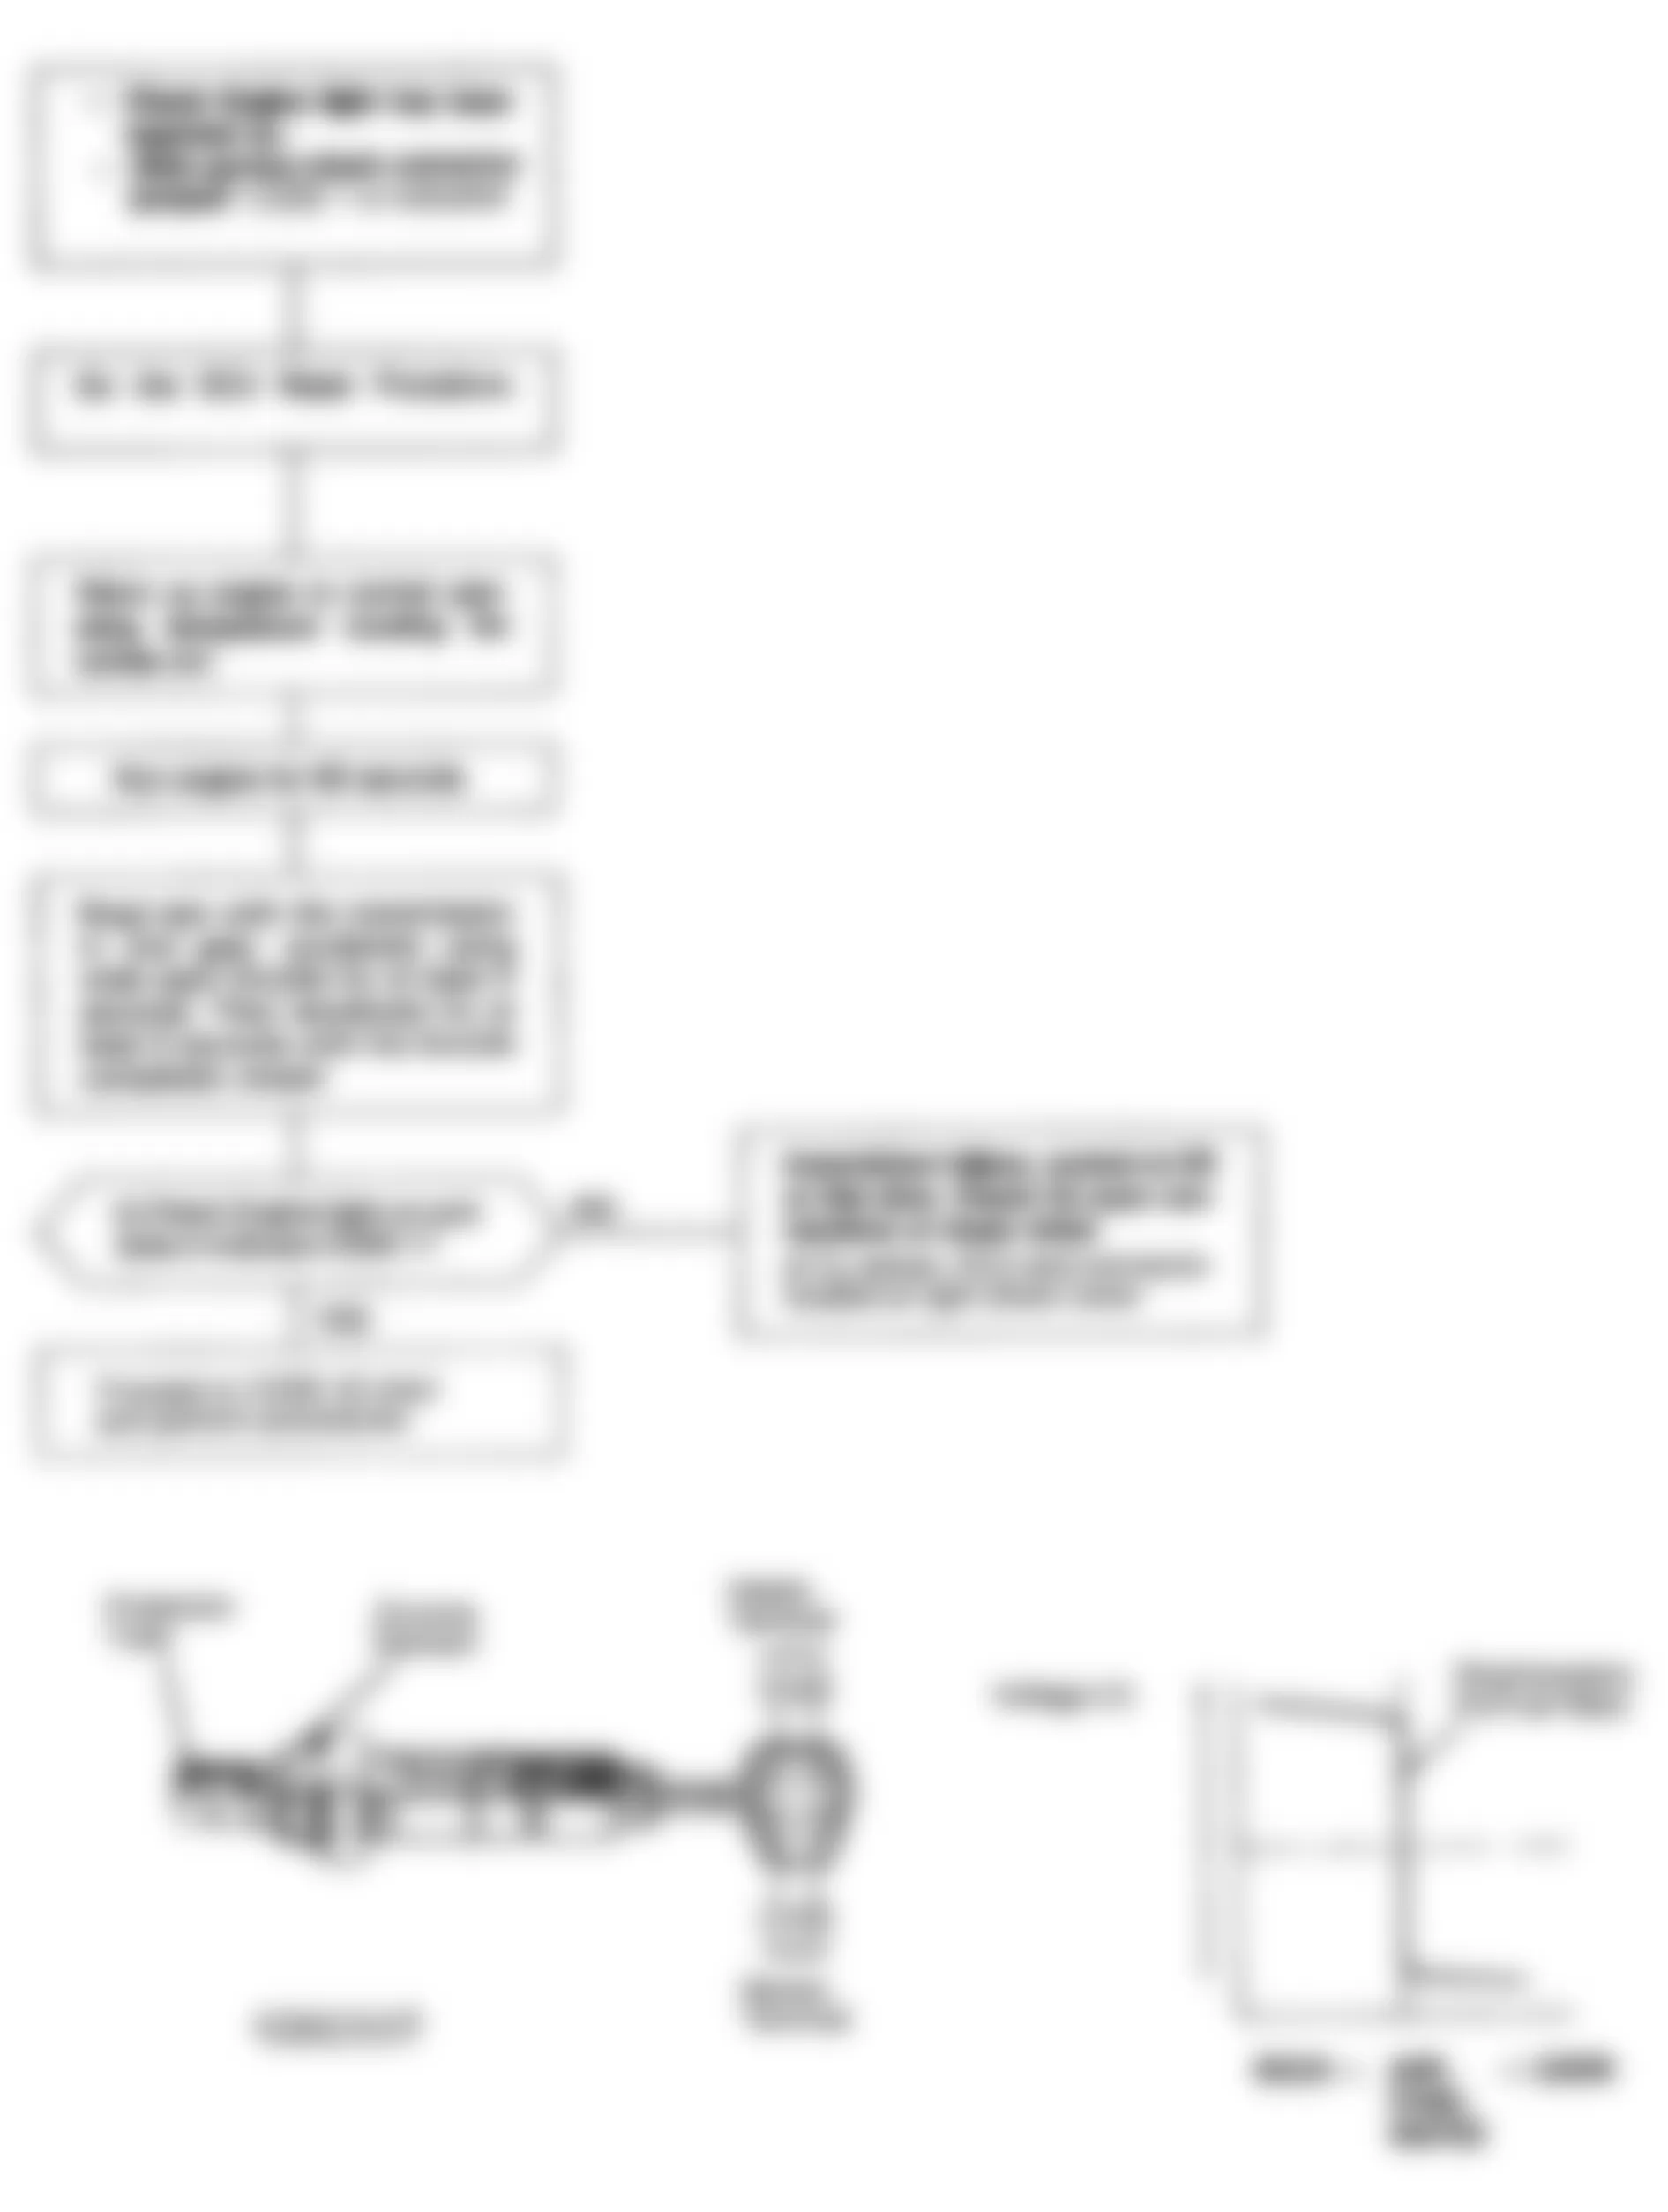 Honda Accord EX 1992 - Component Locations -  Code 1 Chart - Oxygen Sensor Circuit